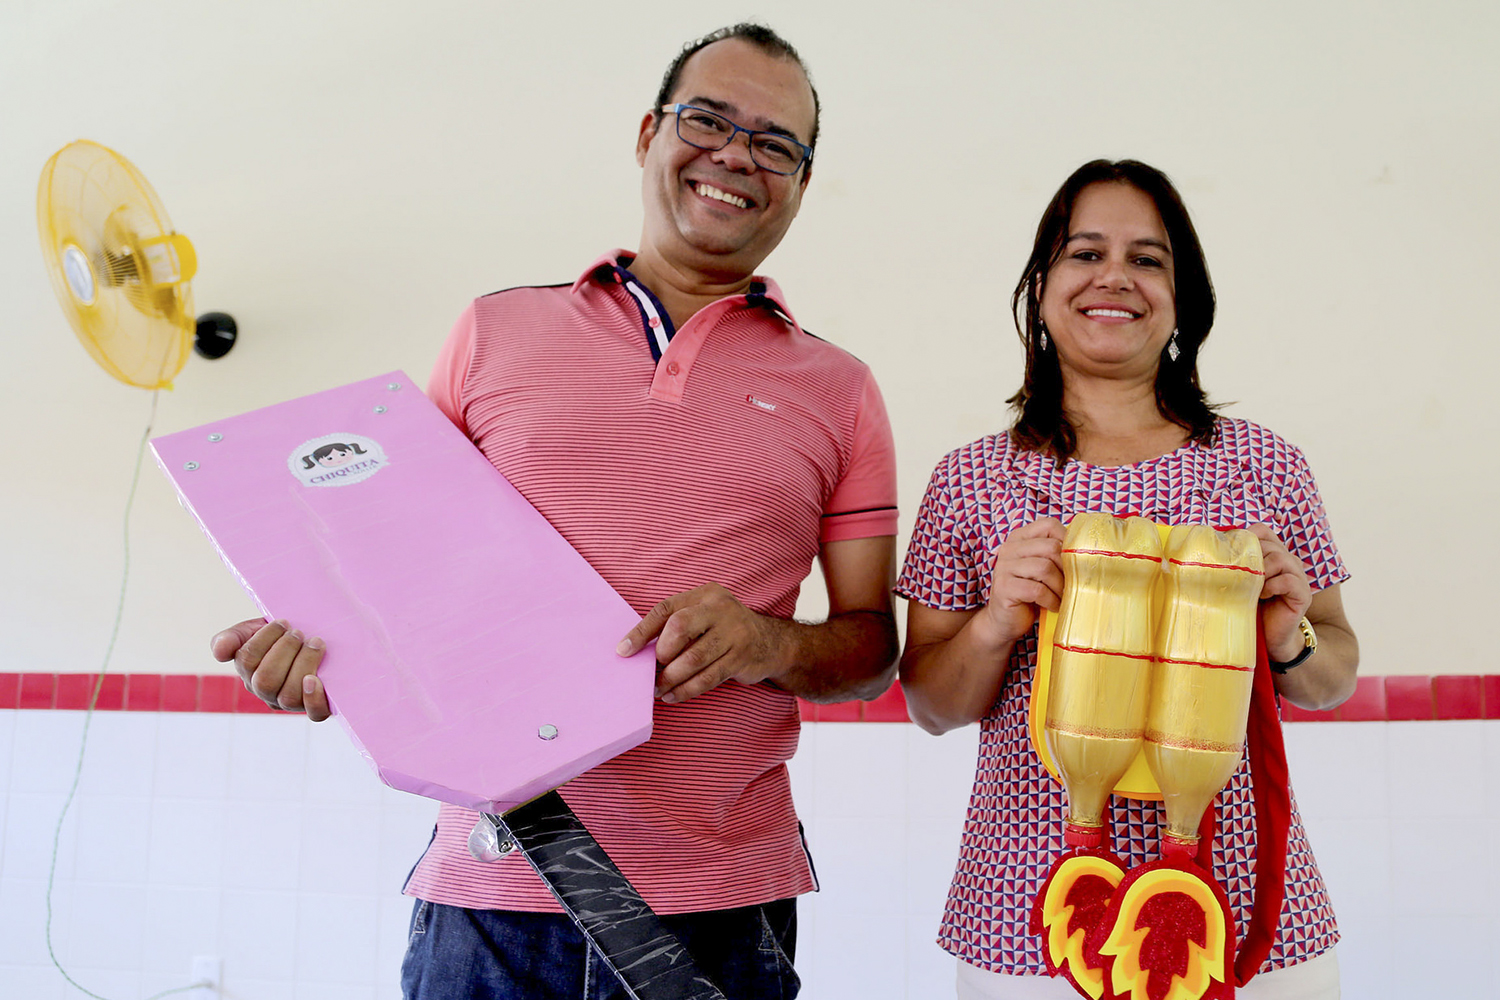 Professores Augusto César e Iracema Aragão lideraram a ação de empreendedorismo social. (fotos: Schirlene Reis/Ascom UFS)